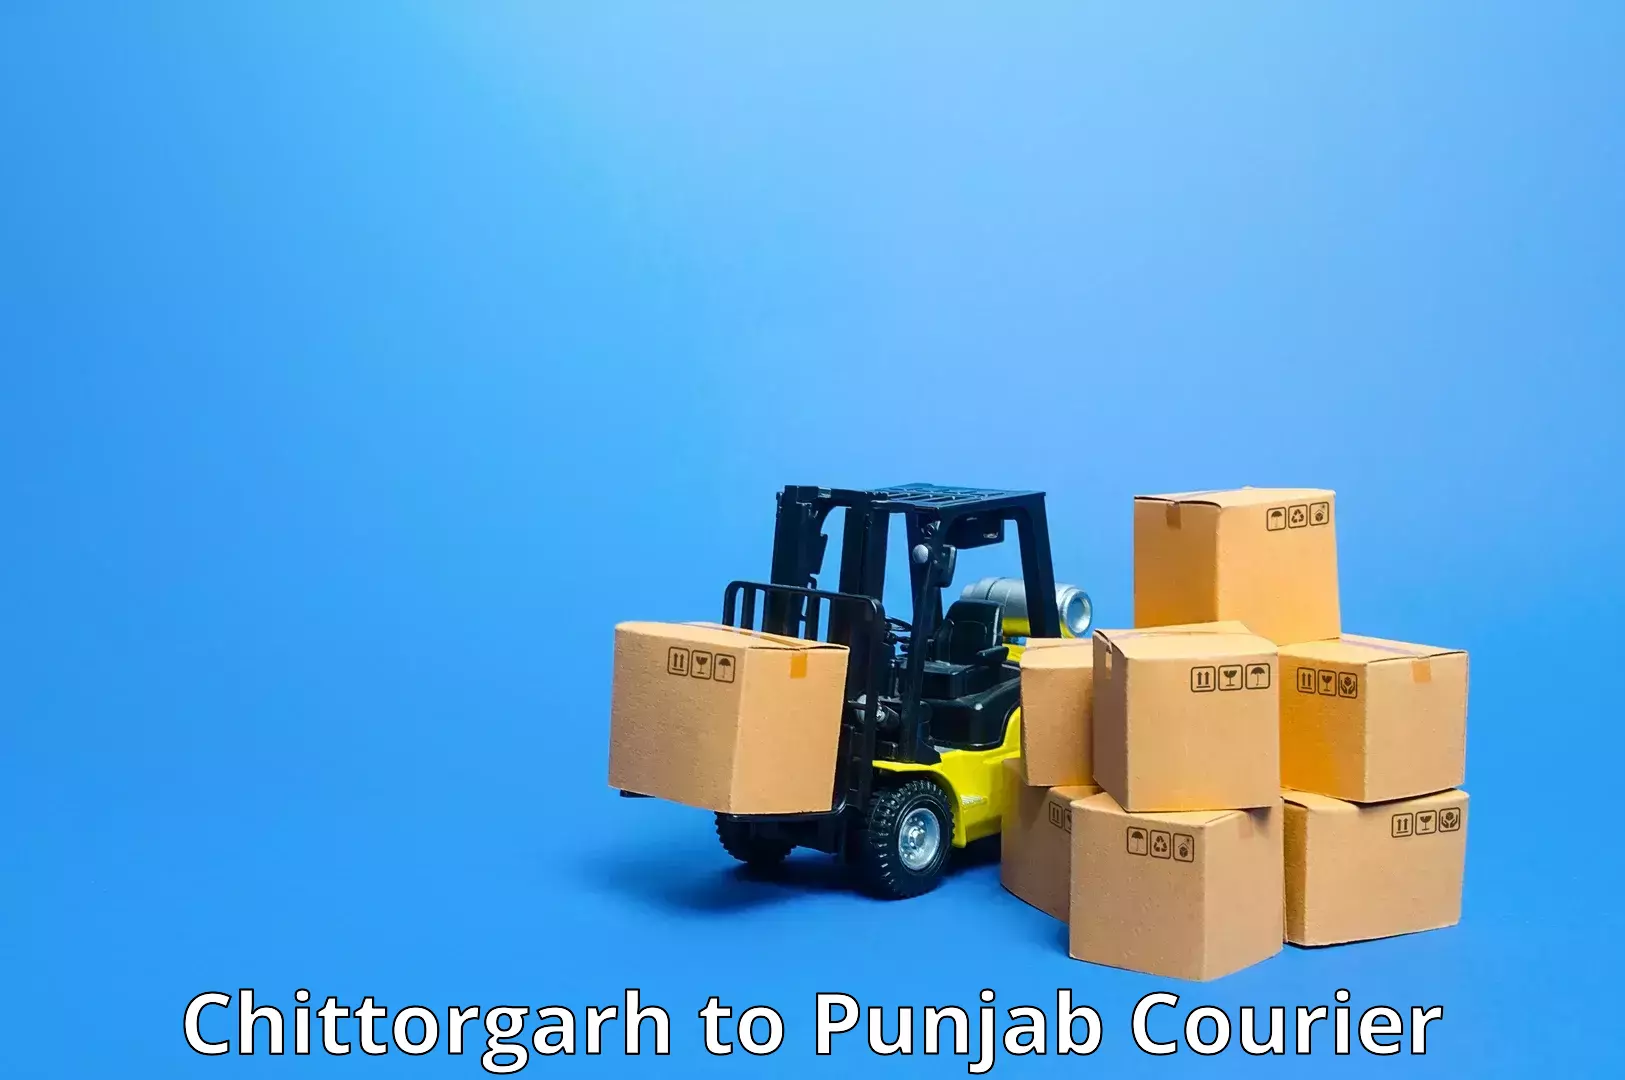 Advanced courier platforms Chittorgarh to Ropar